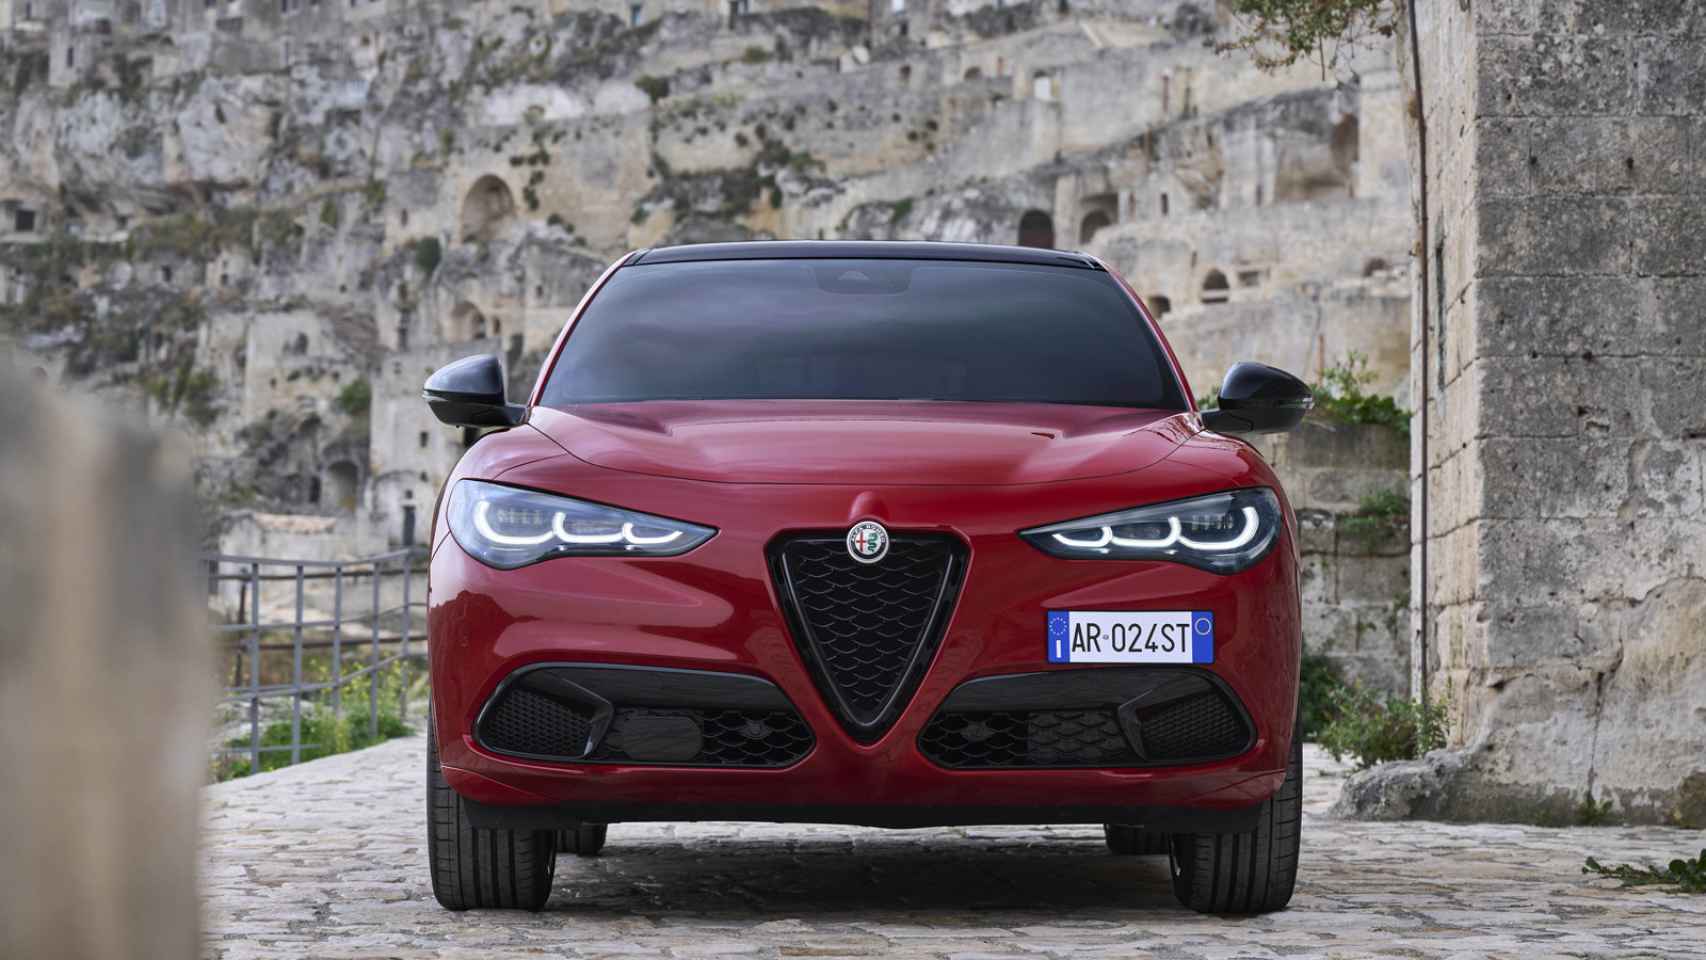 El Alfa Romeo Stelvio es un SUV que combina deportividad y confort.